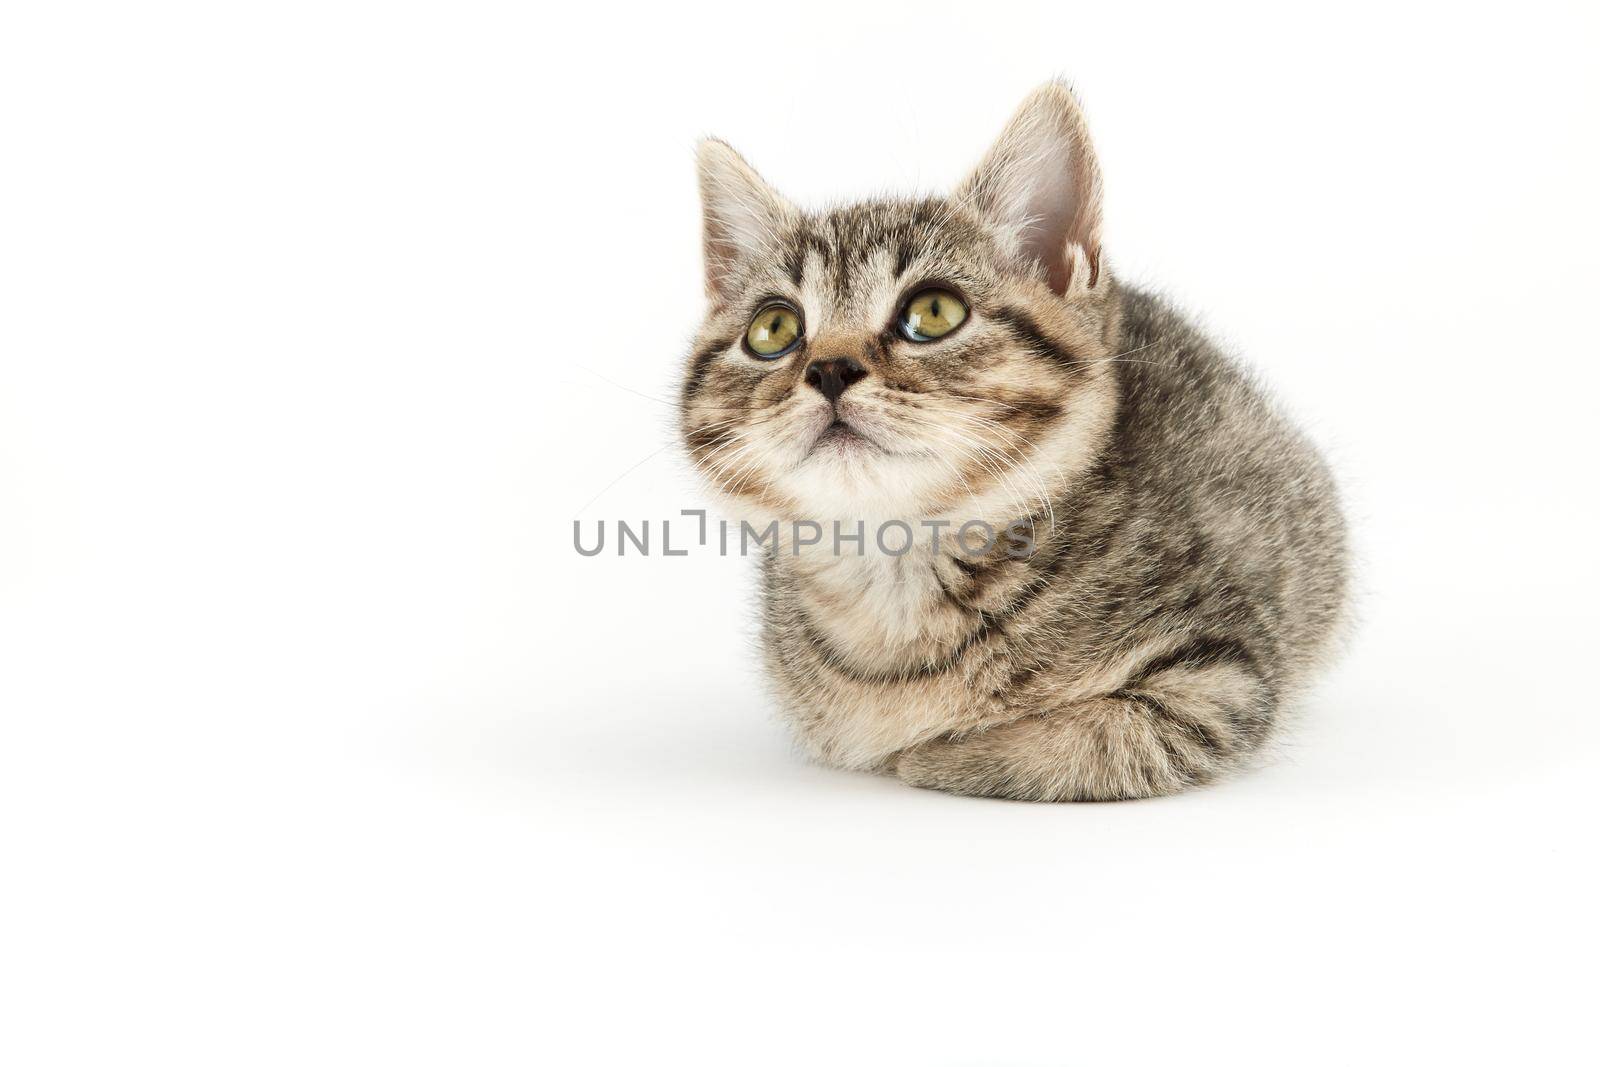 Little tabby (European Shorthair) kitten by Xebeche2